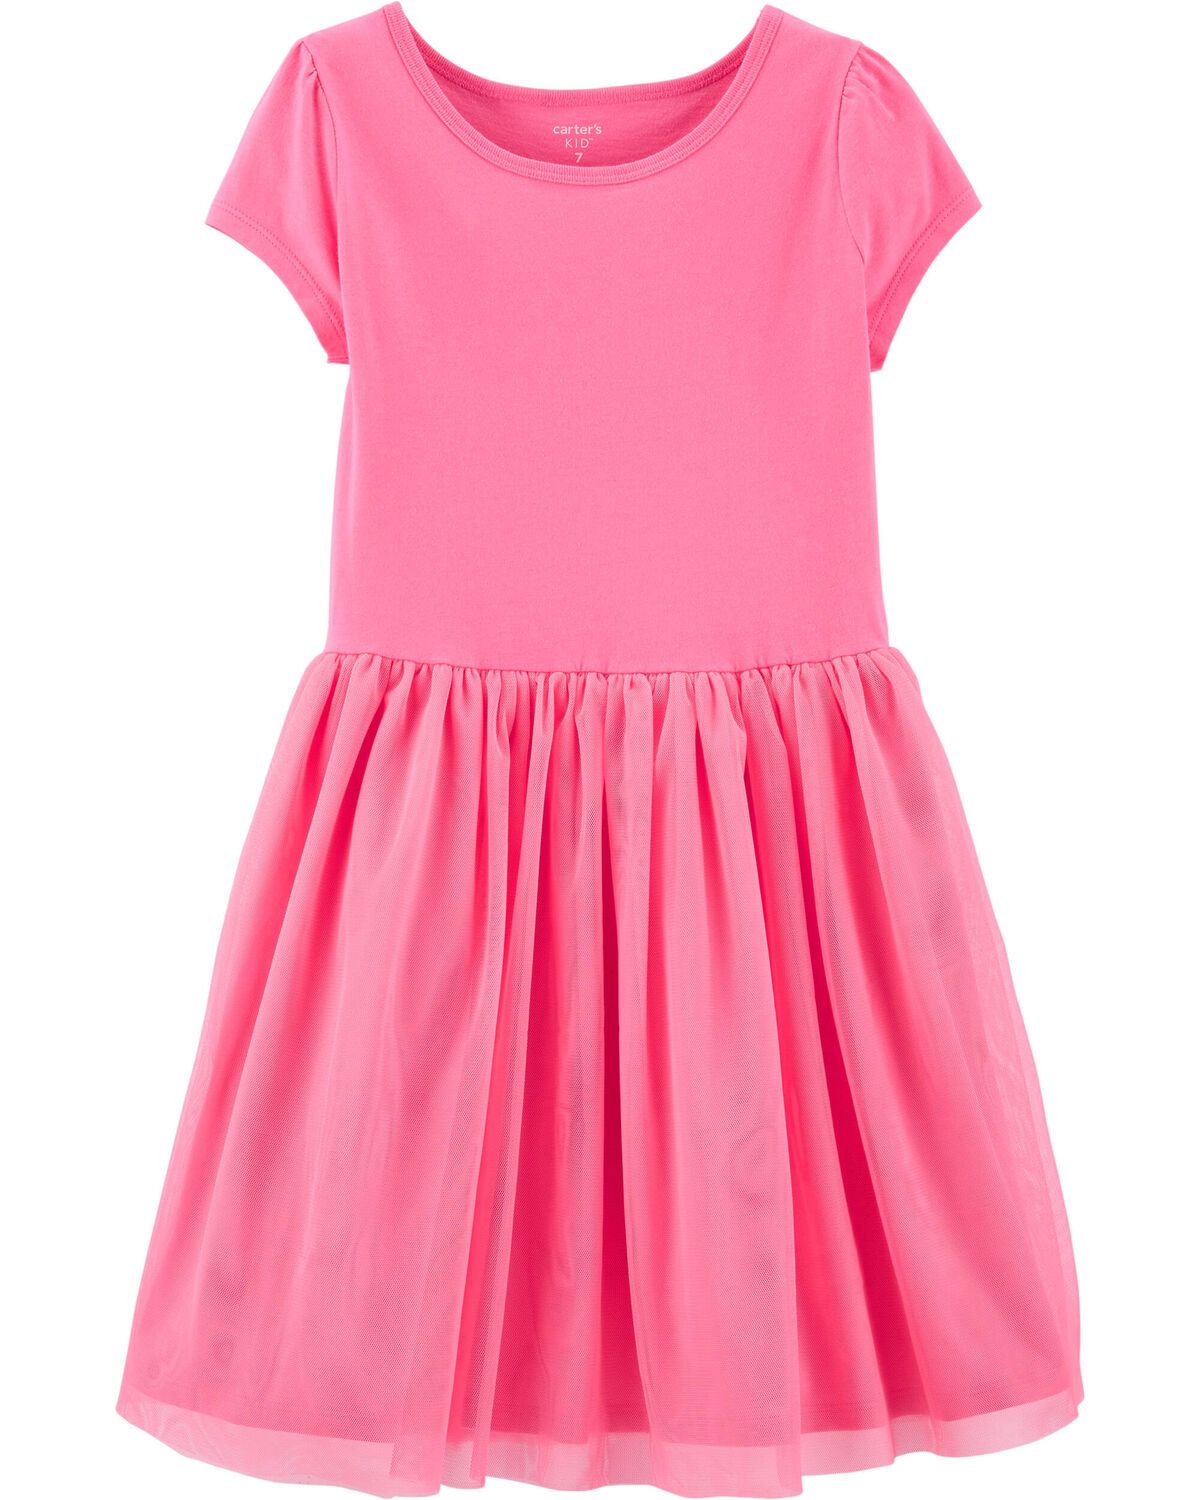 Pink Kid Tutu Jersey Dress | carters.com | Carter's